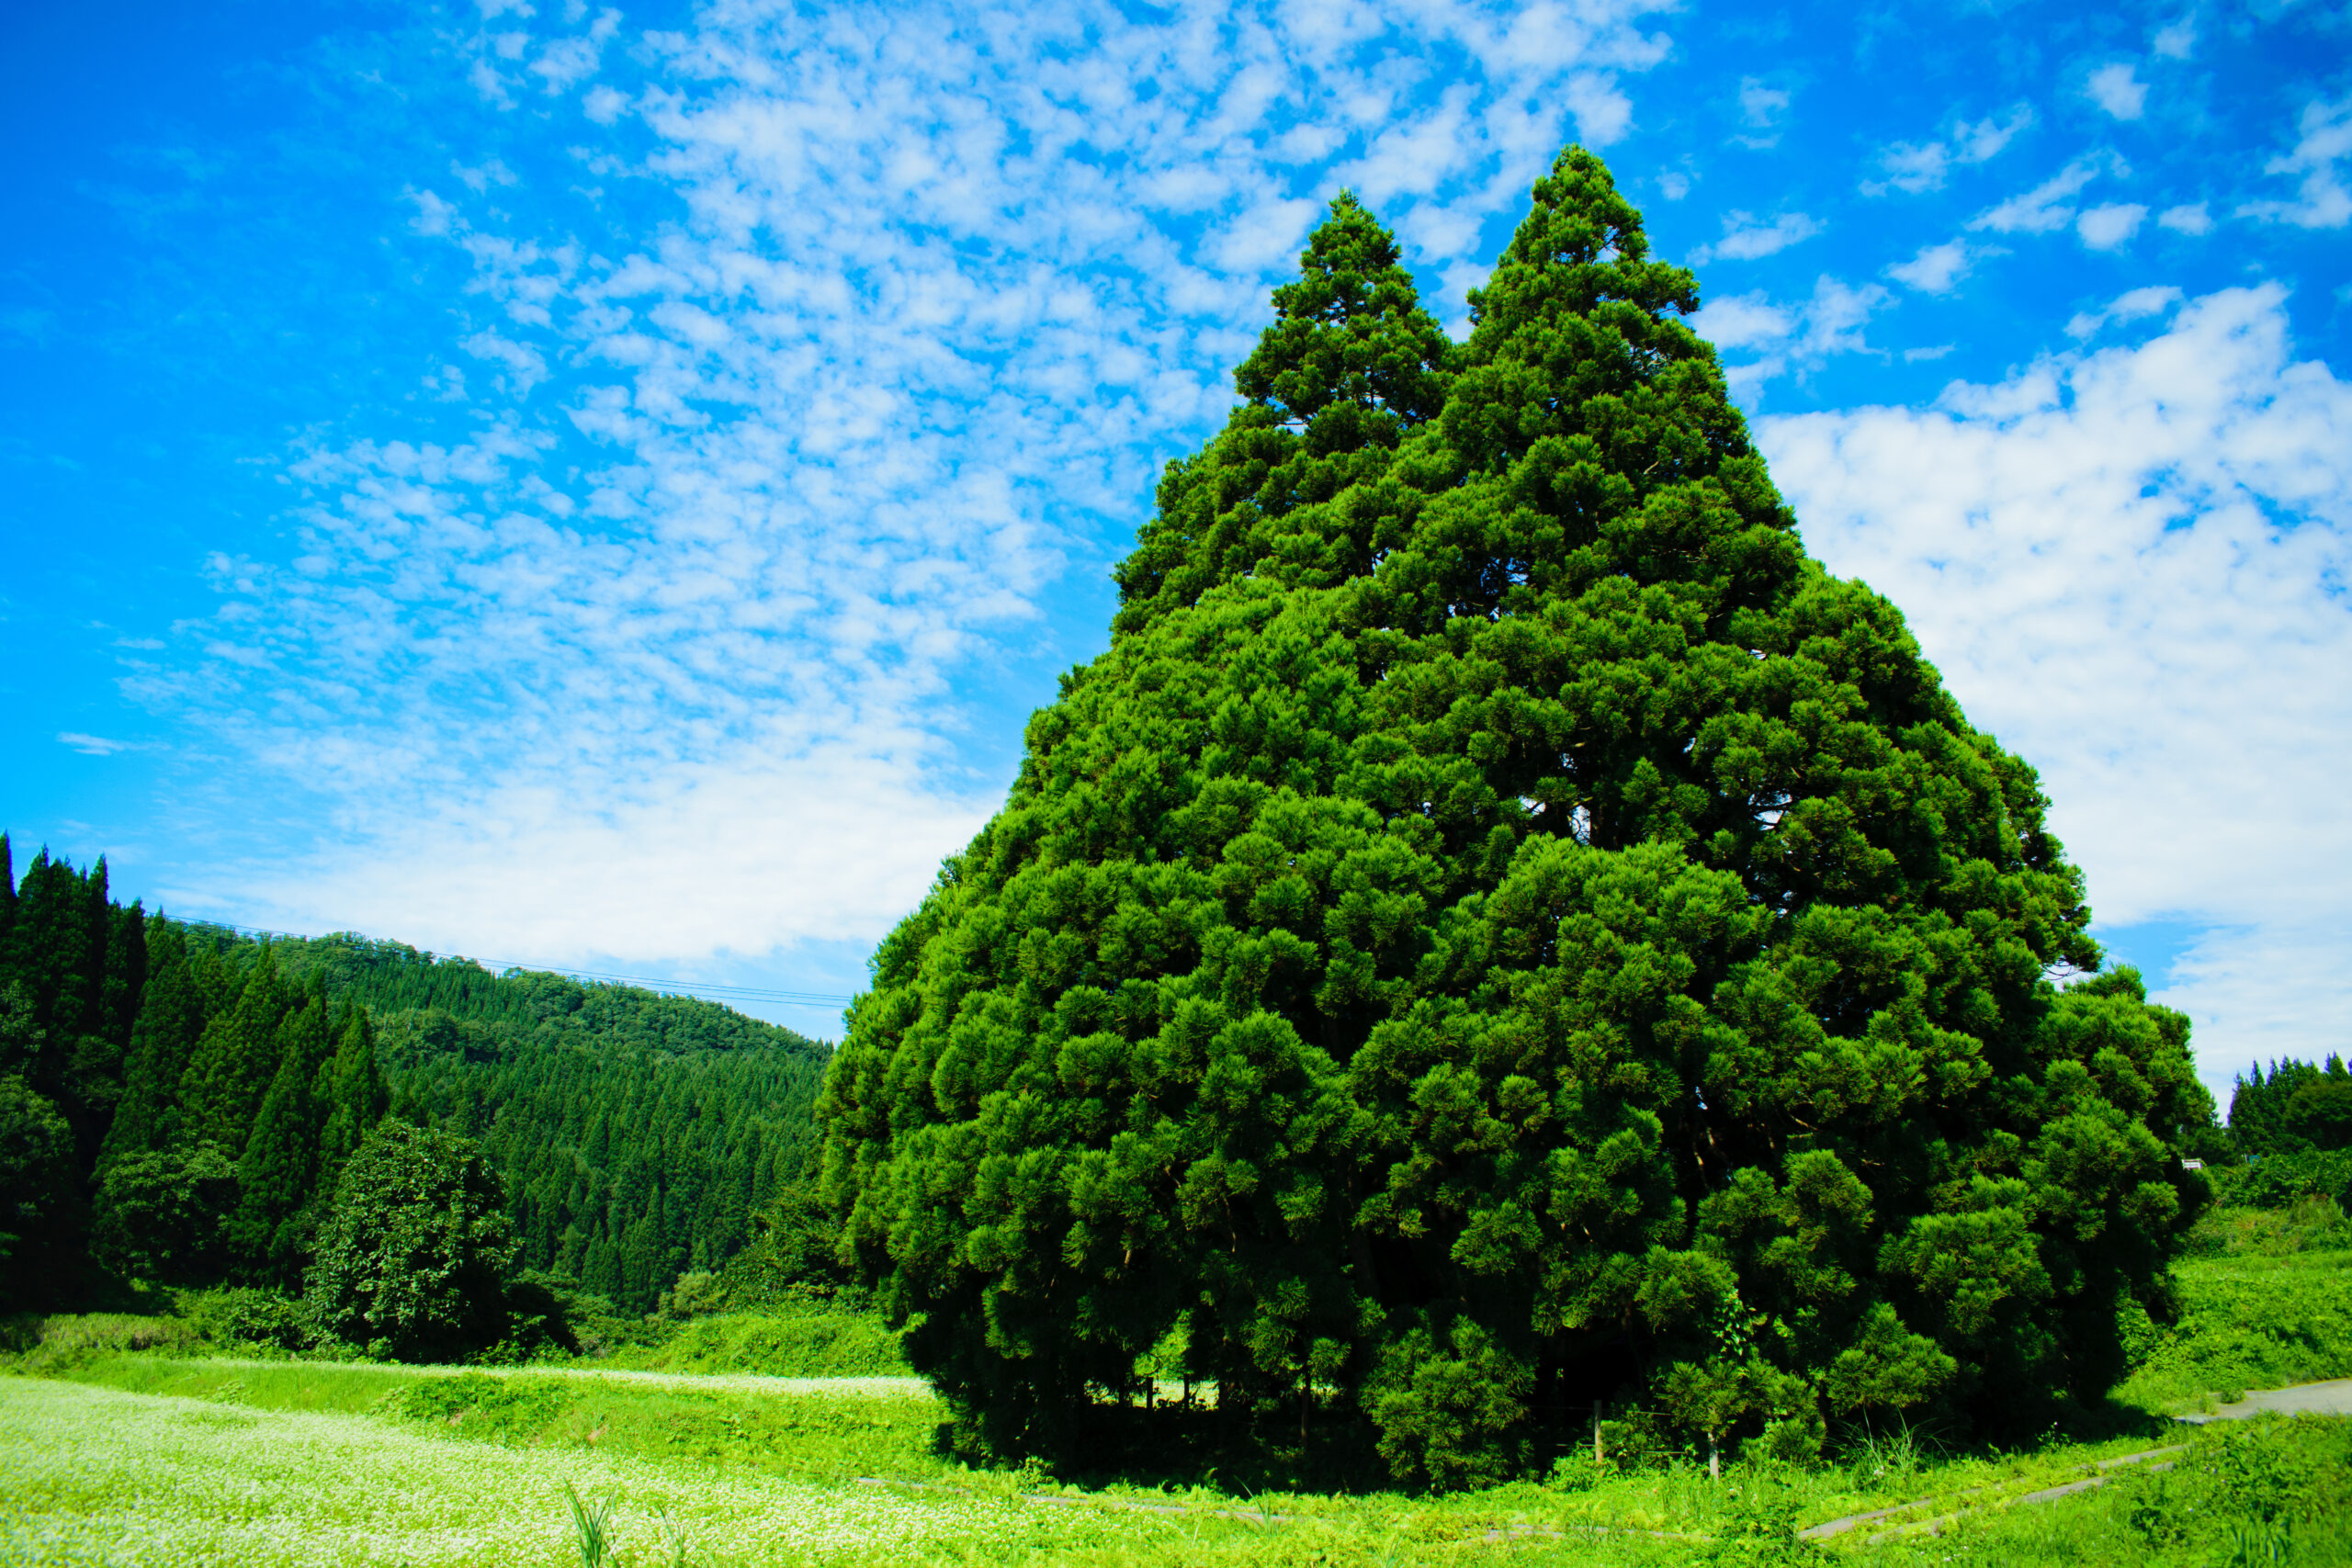 小杉地区にある大杉ということから、「小杉の大杉」という愛称で村民に御神木として親しまれてきたトトロに似た大杉